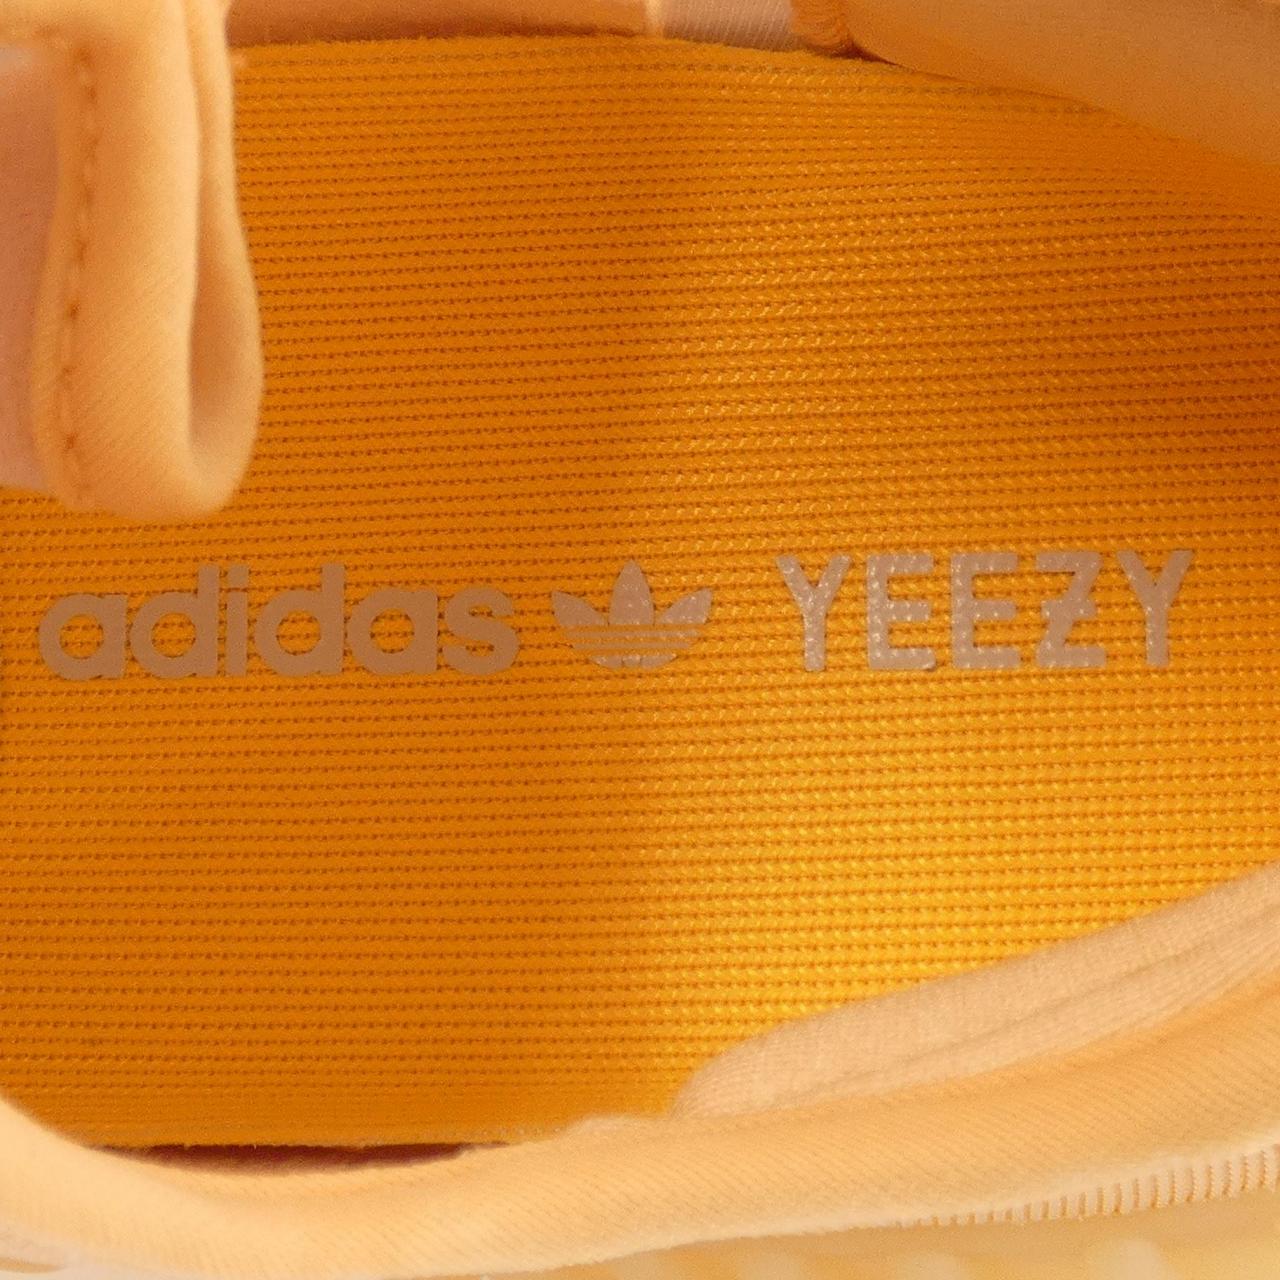 Adidas Kanye West ADIDAS KANYE WEST sneakers